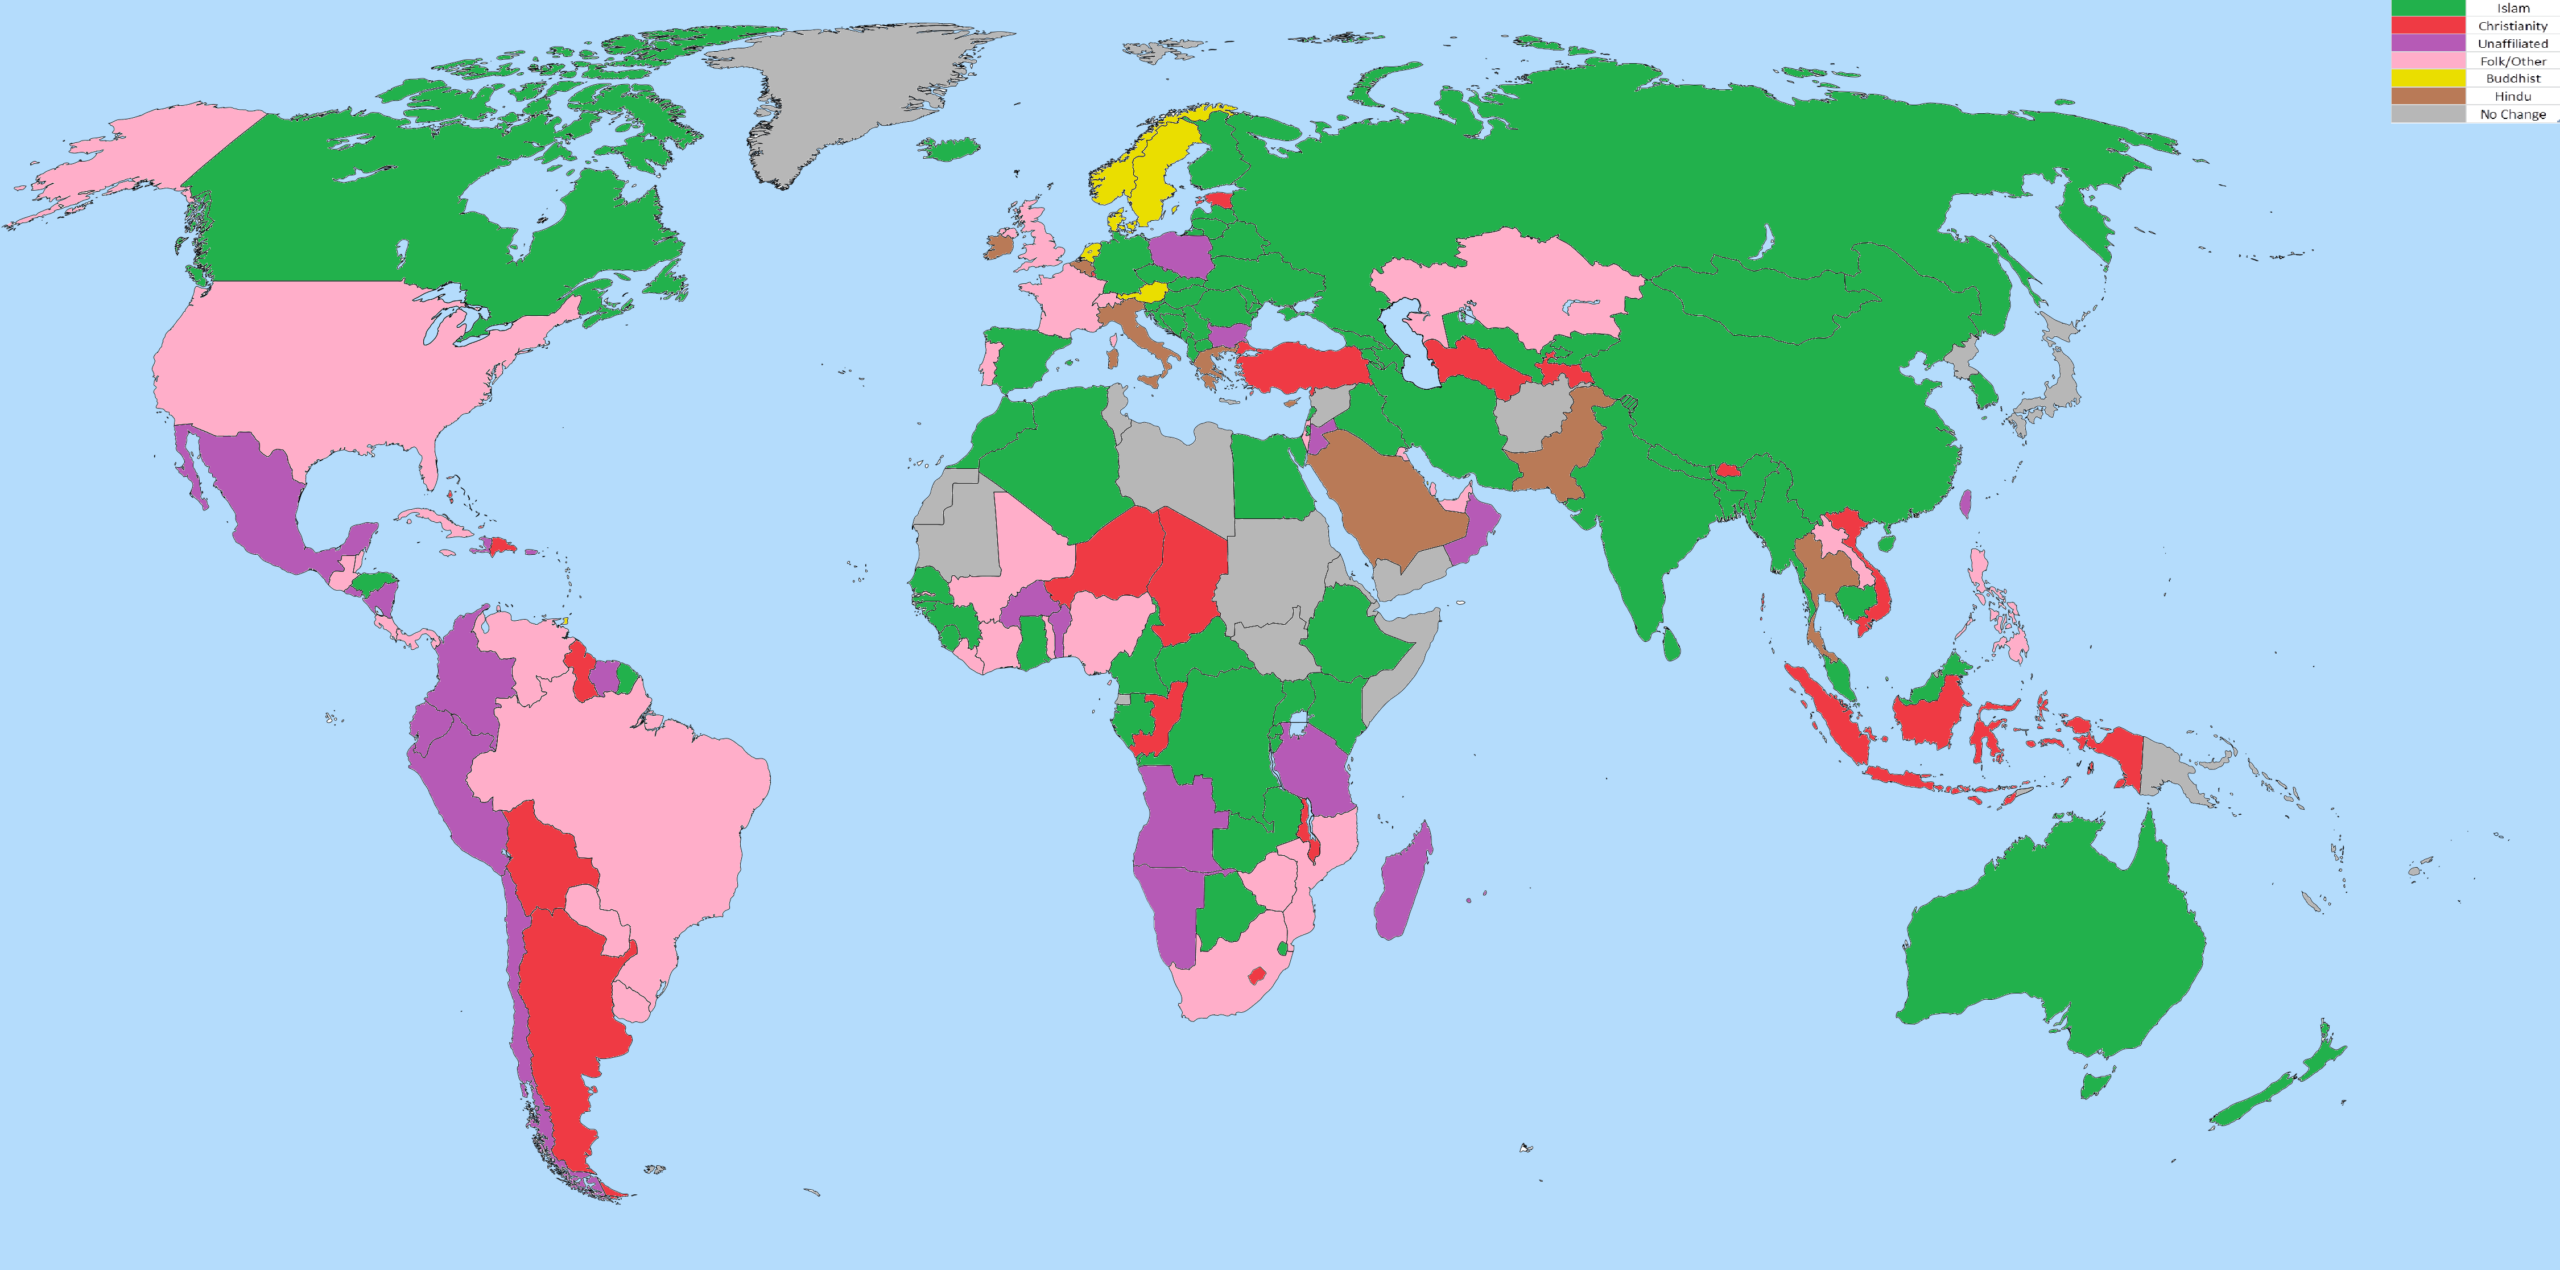 religione in maggior crescita, mappa del mondo con Paesi colorati in modo diverso